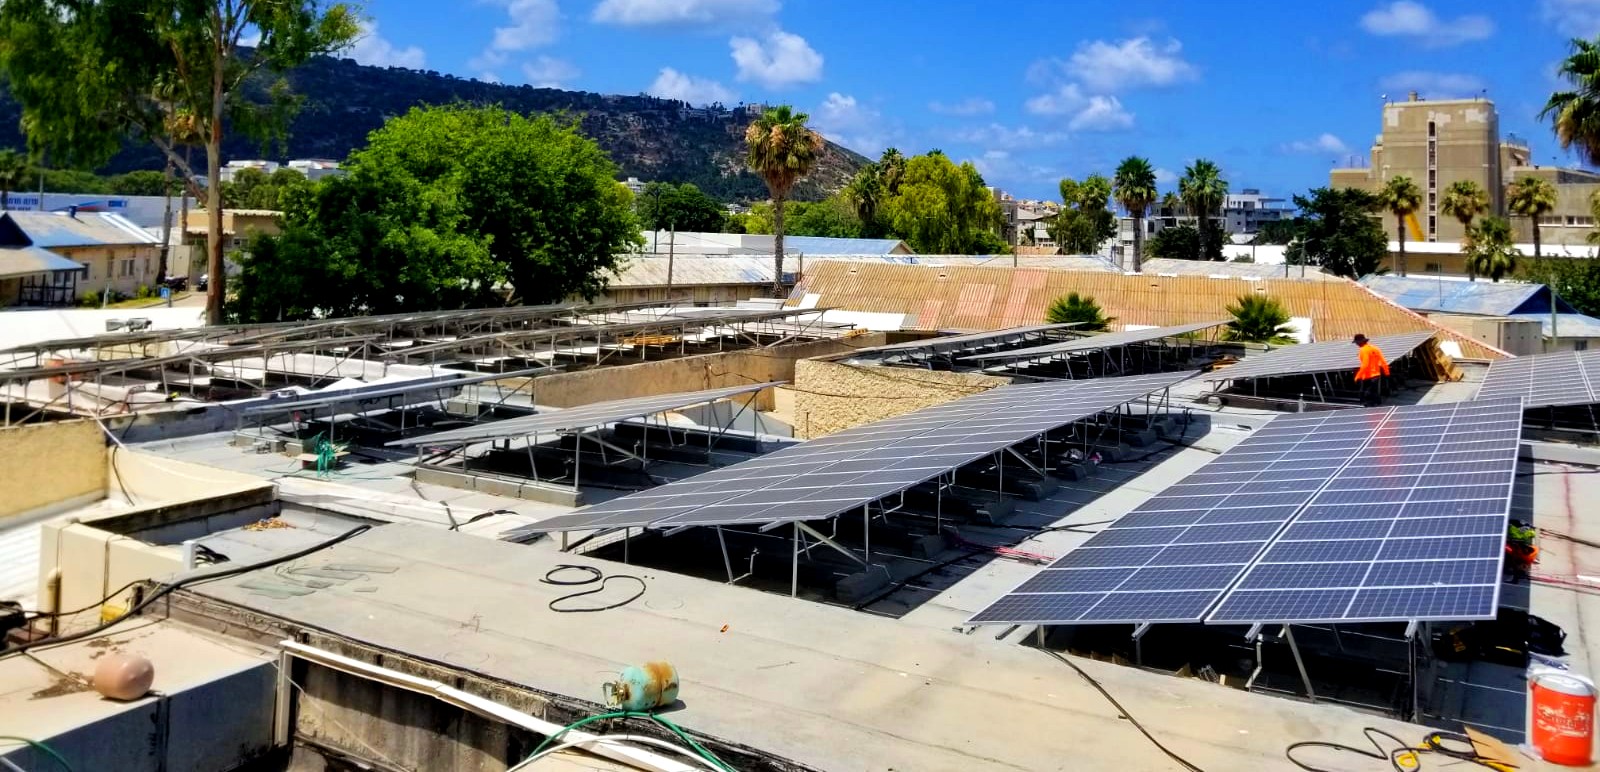 הקמת מערכת סולרית על גג בית ספר באיזור חיפה. צילום: נח